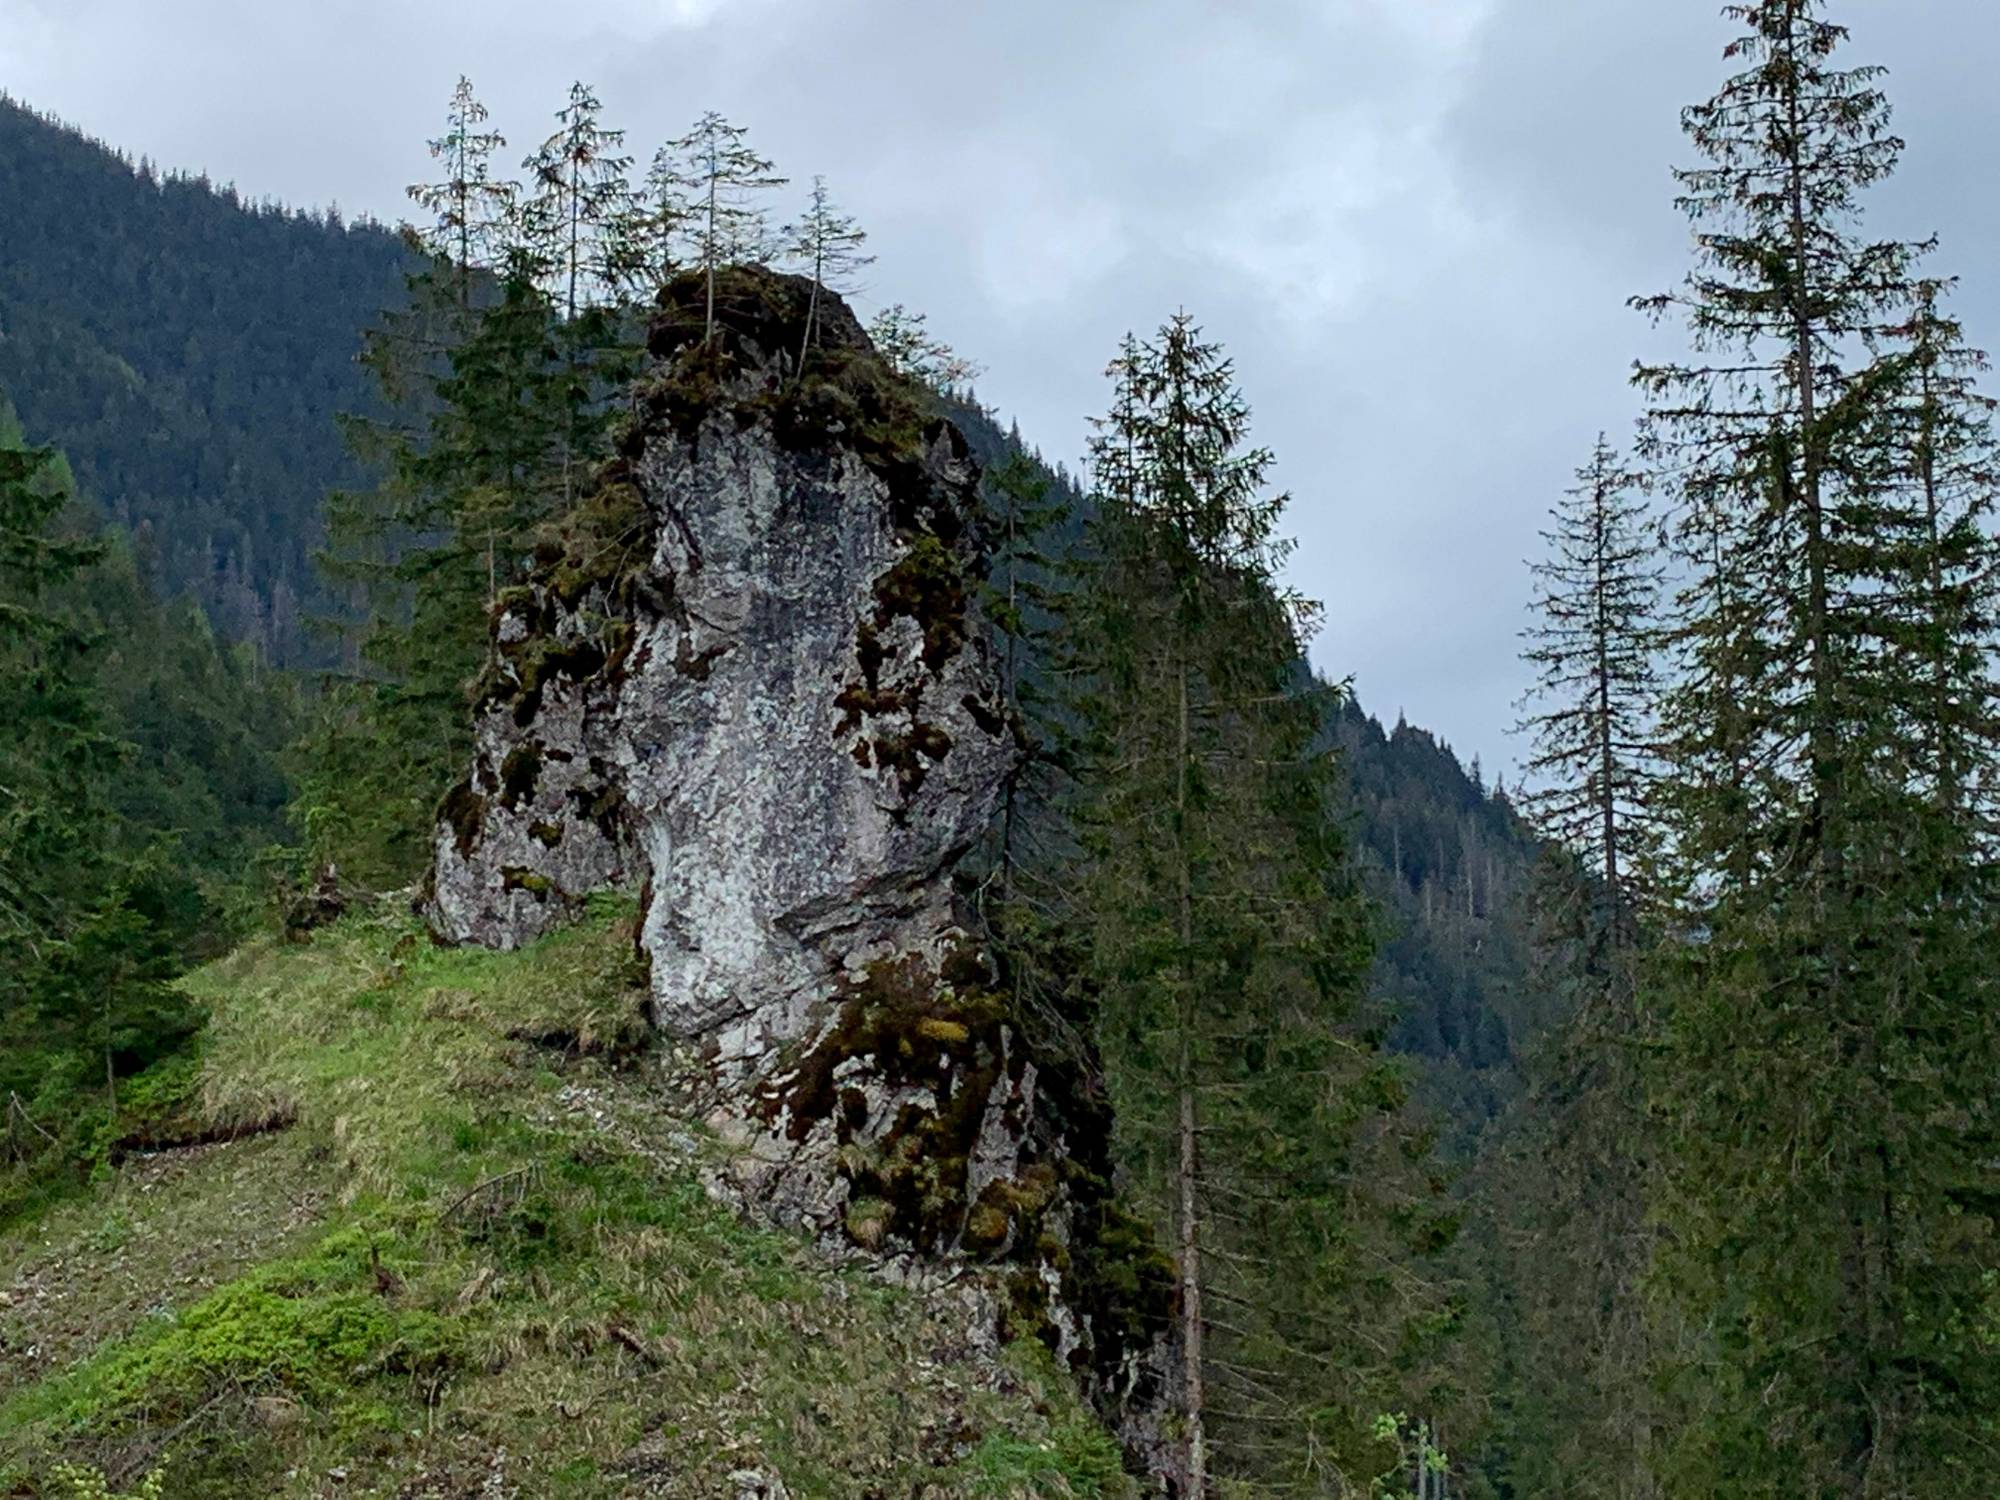 A rock in the Chochołowska Valley